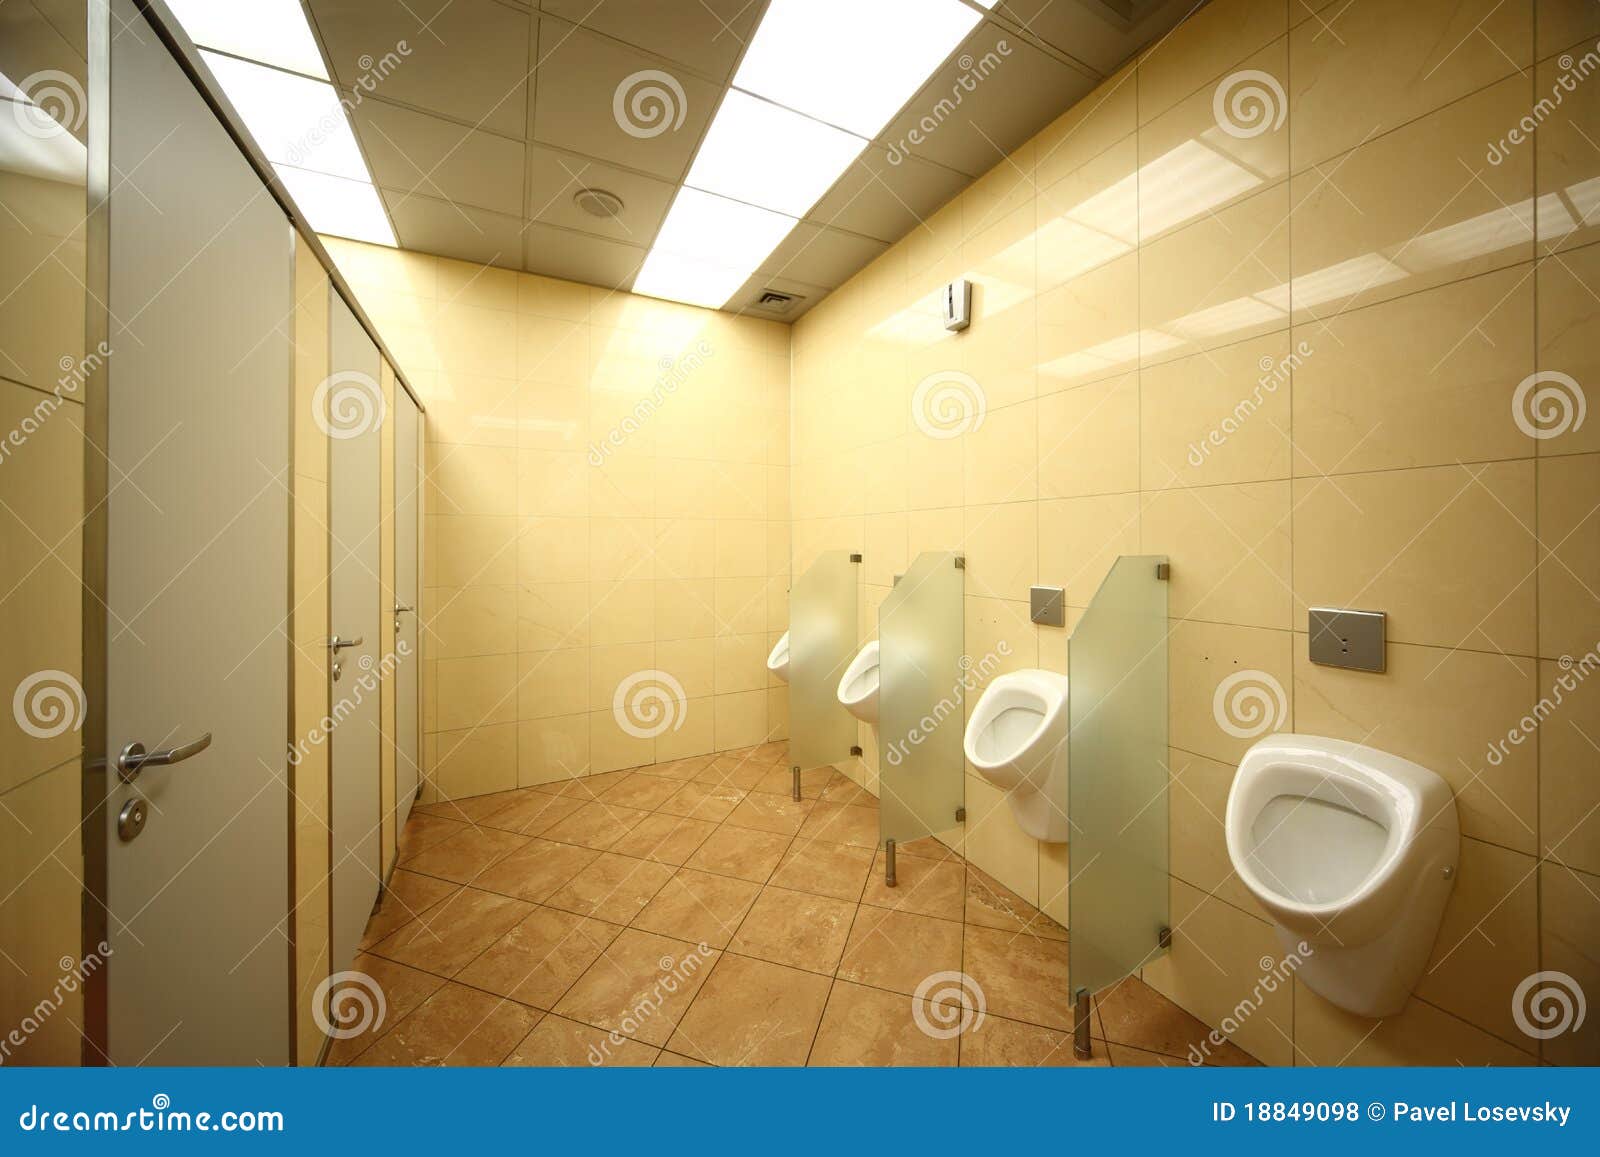 Общественный мужской туалет. Двери для общественных туалетов. Общественный туалет писсуары. Писсуар мужской для туалета. Мужской туалет внутри.